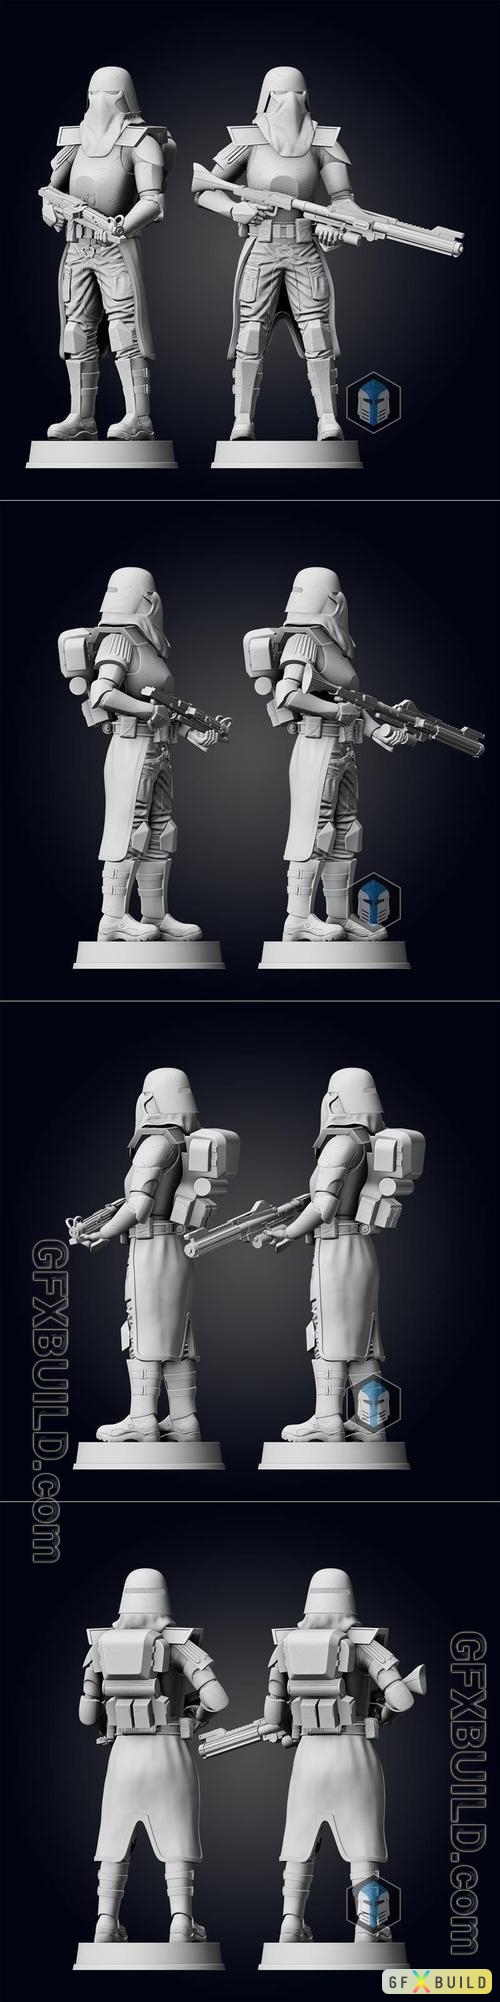 Galactic Marine Figurine - Pose 1 STL